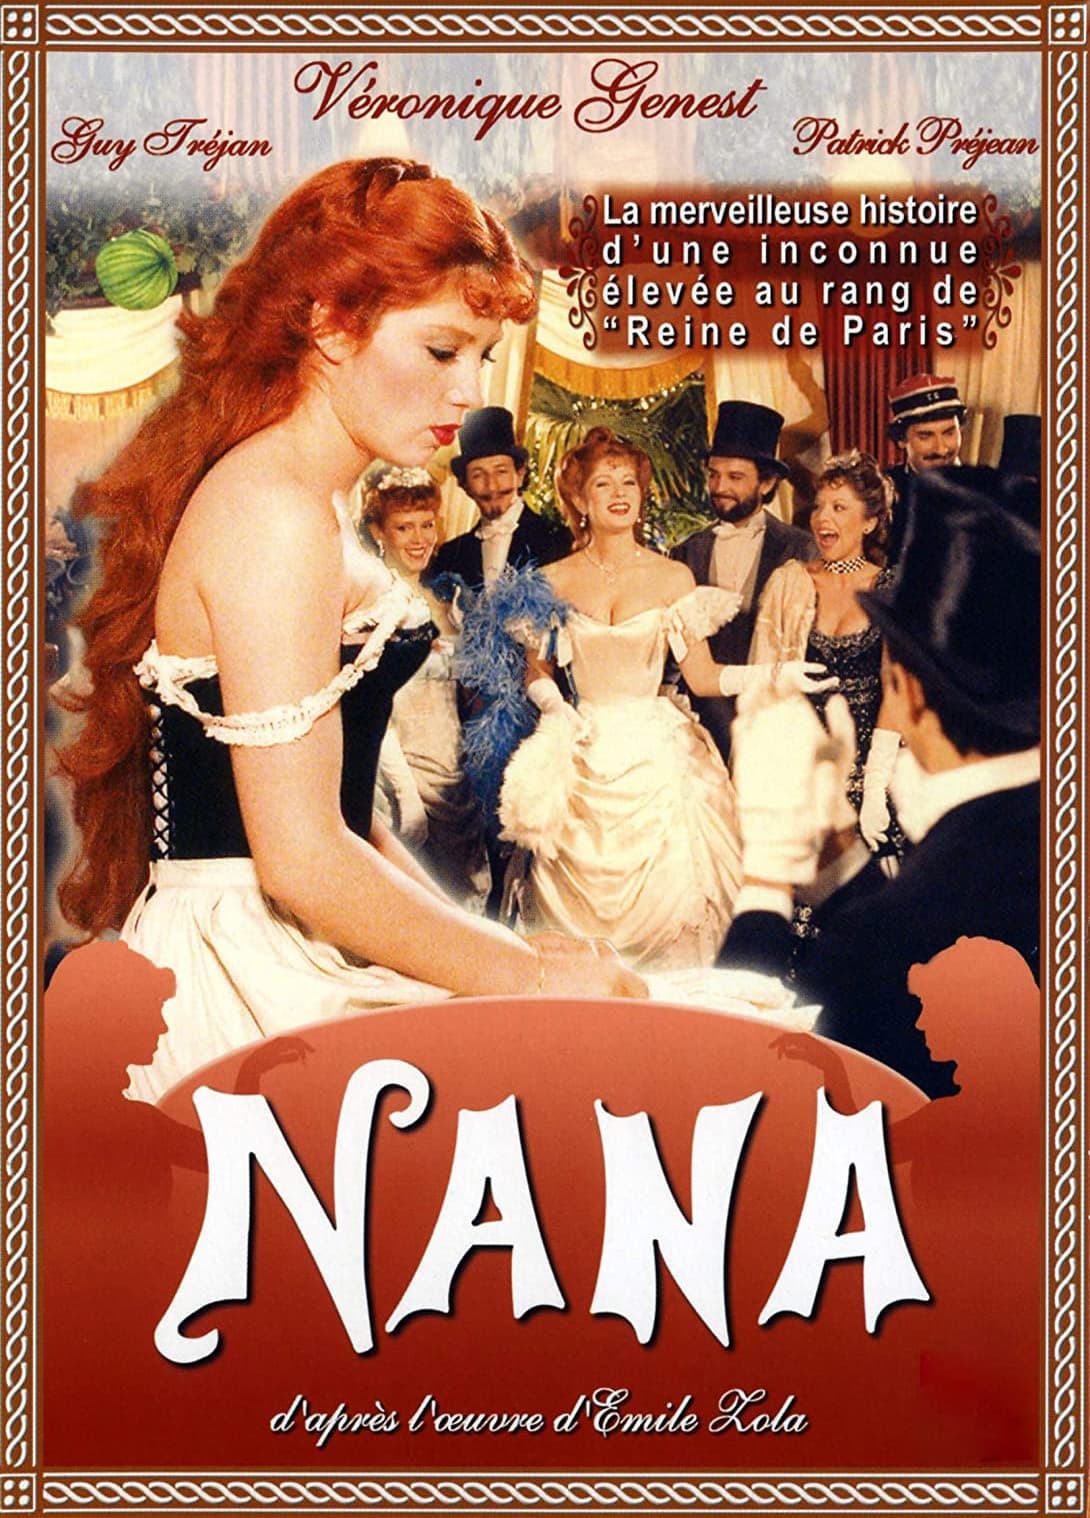 NANA (1981)